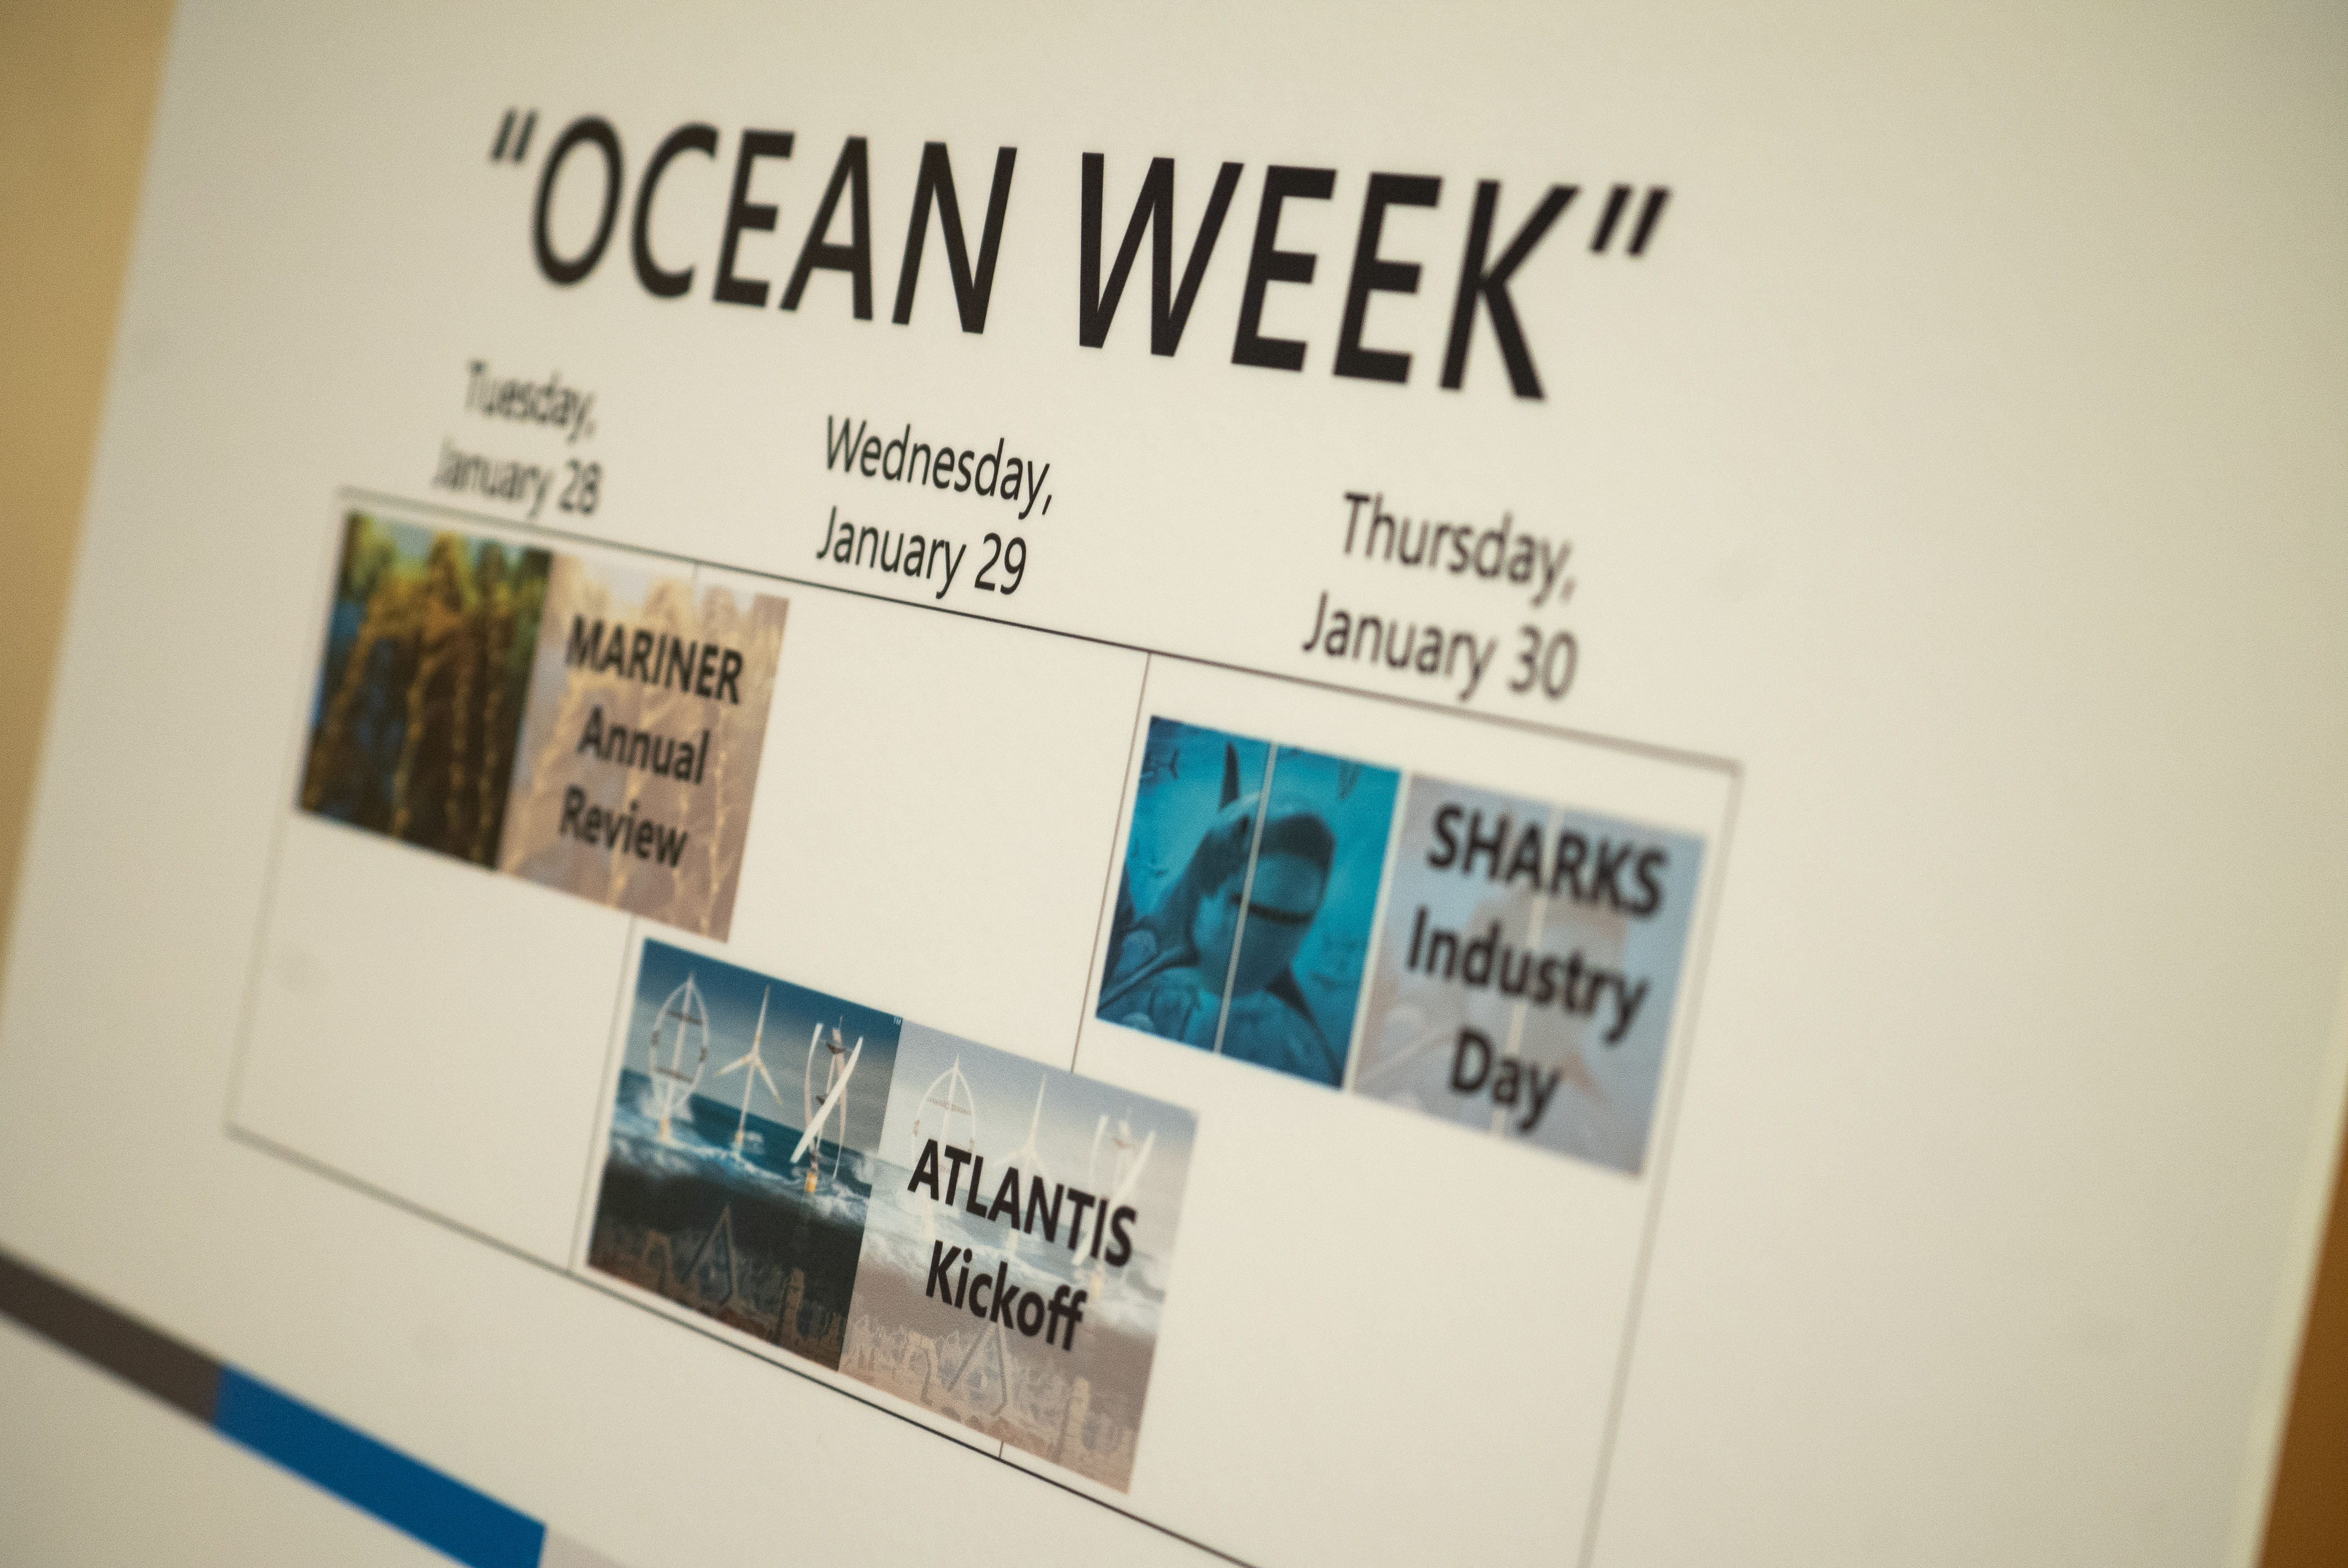 ARPA-E Ocean Week Blog